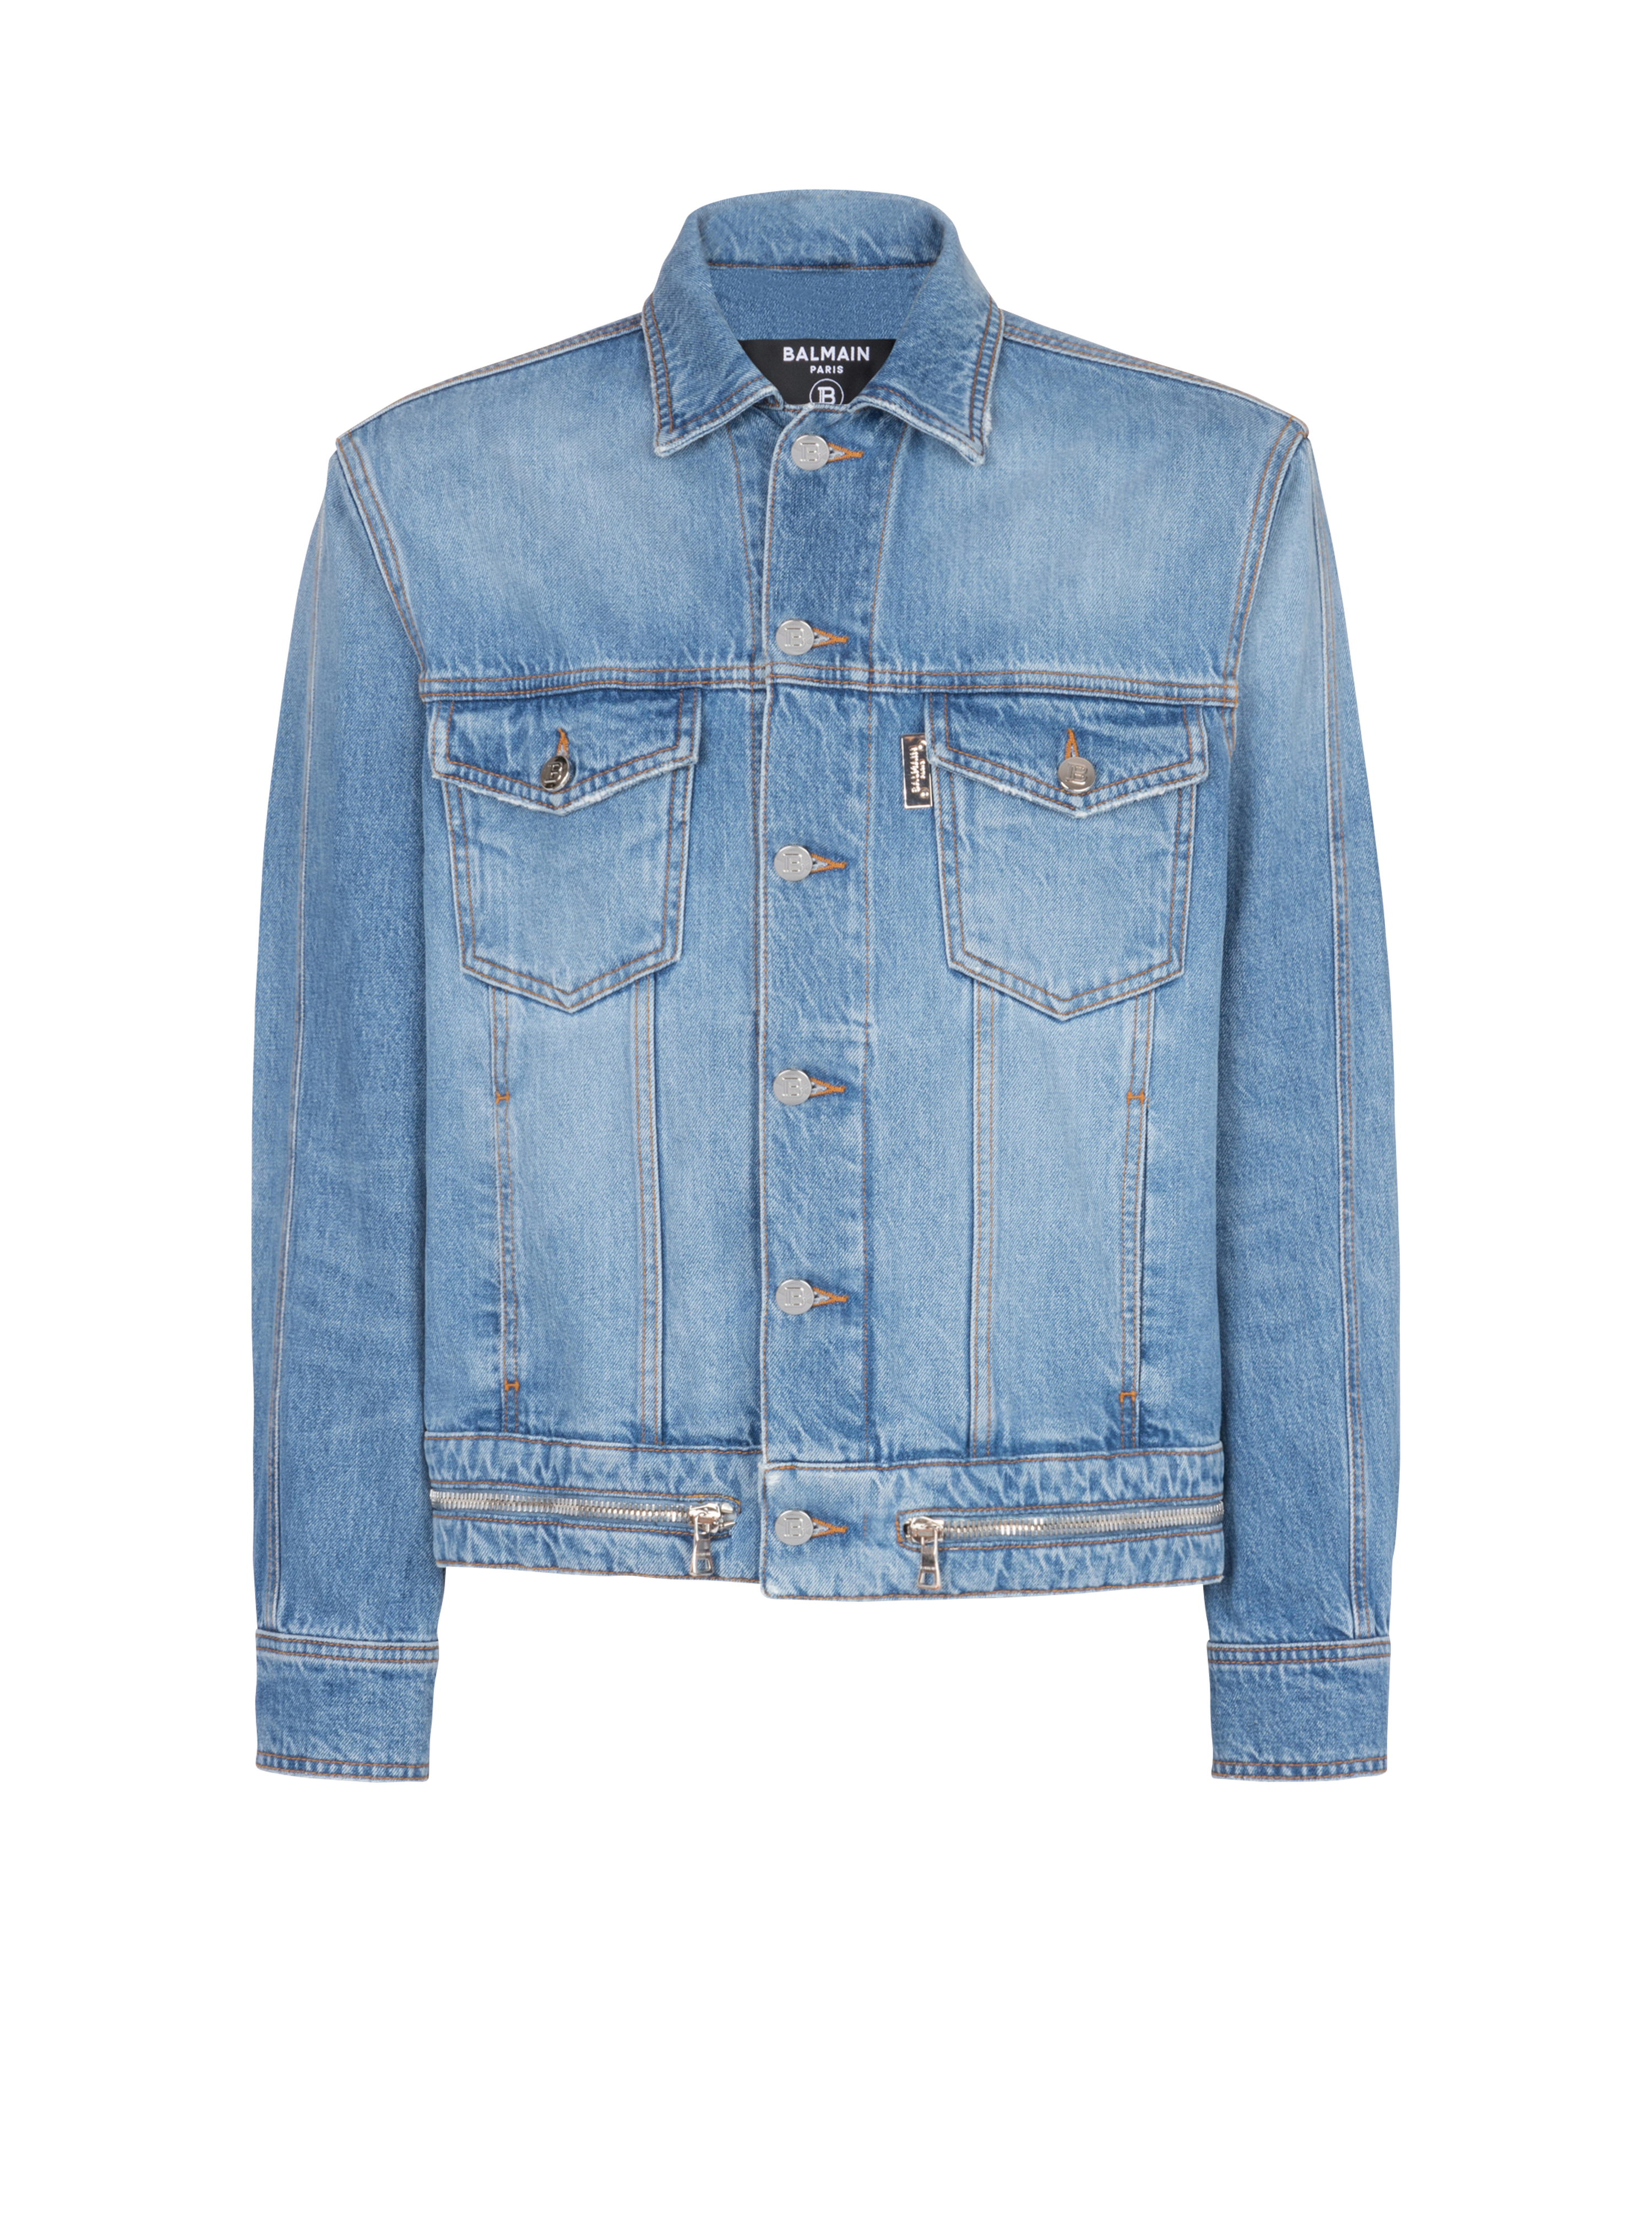 Denim jacket with zip fastening, blue